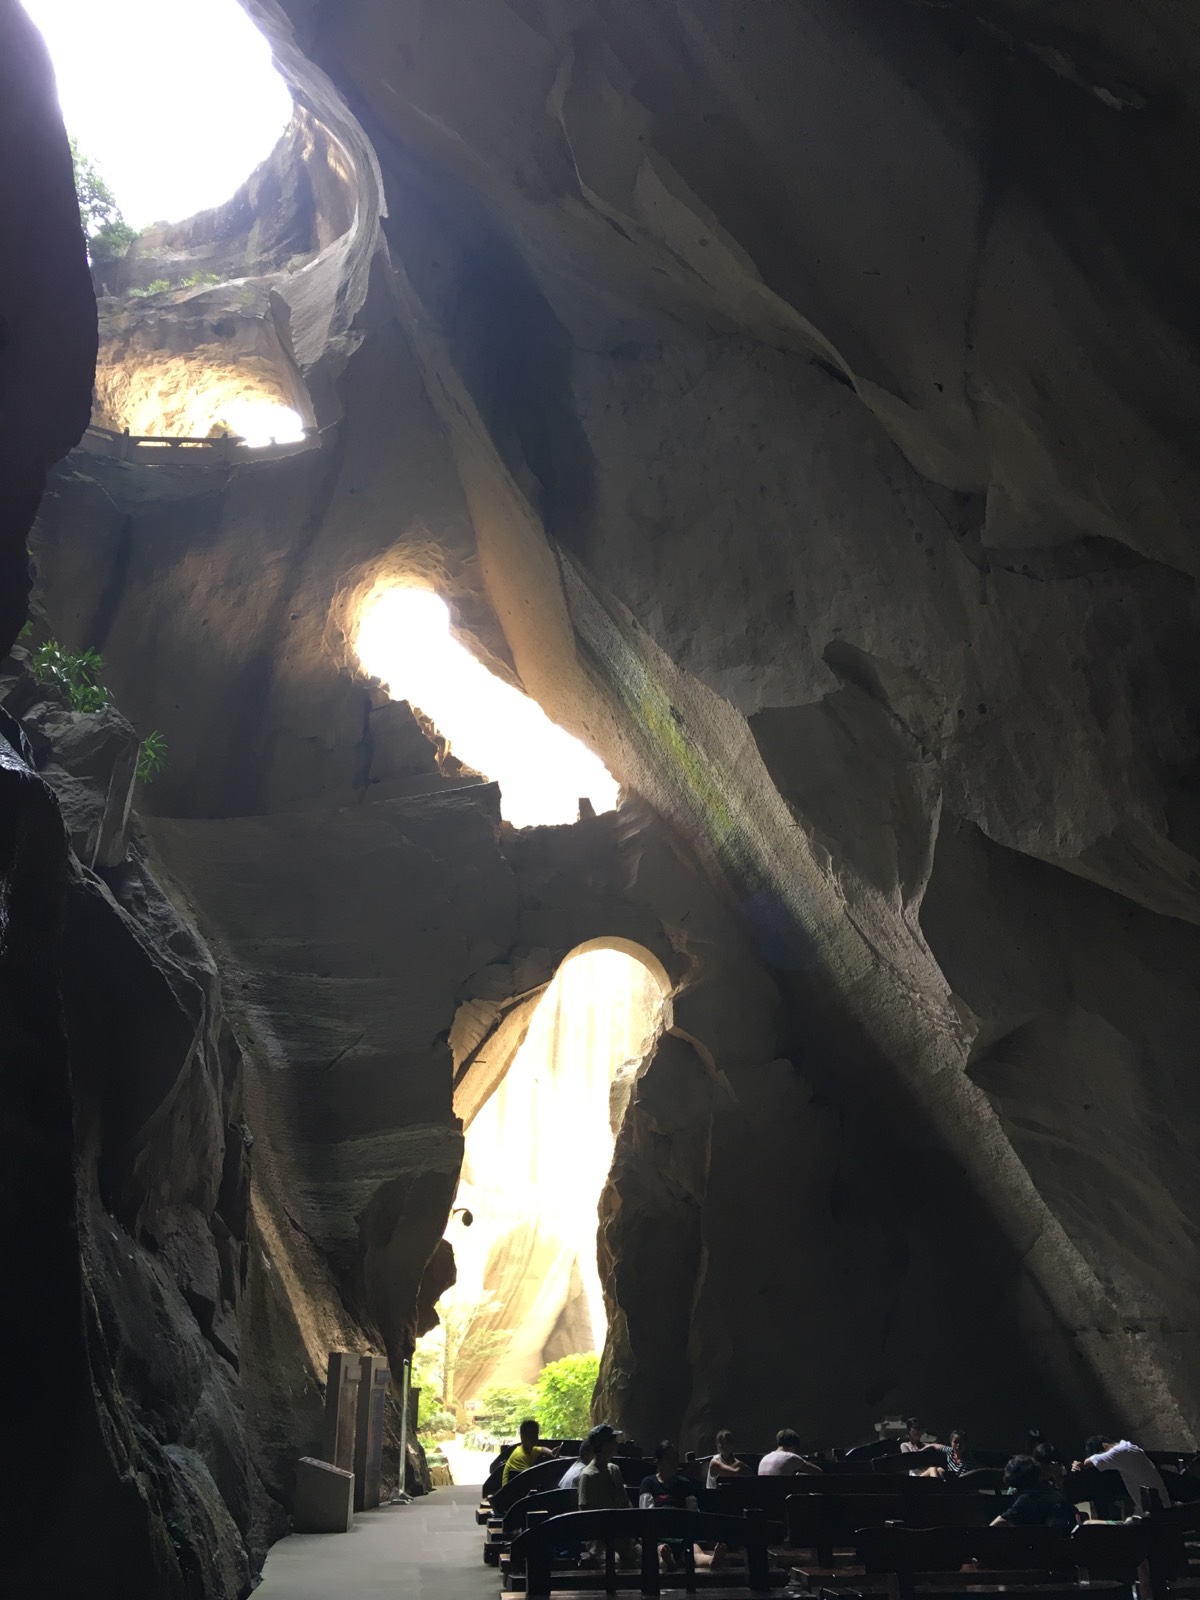 天然洞窟变成采石场，又变成旅游景点，蛮特别的景观。巨大的洞窟不见天日在